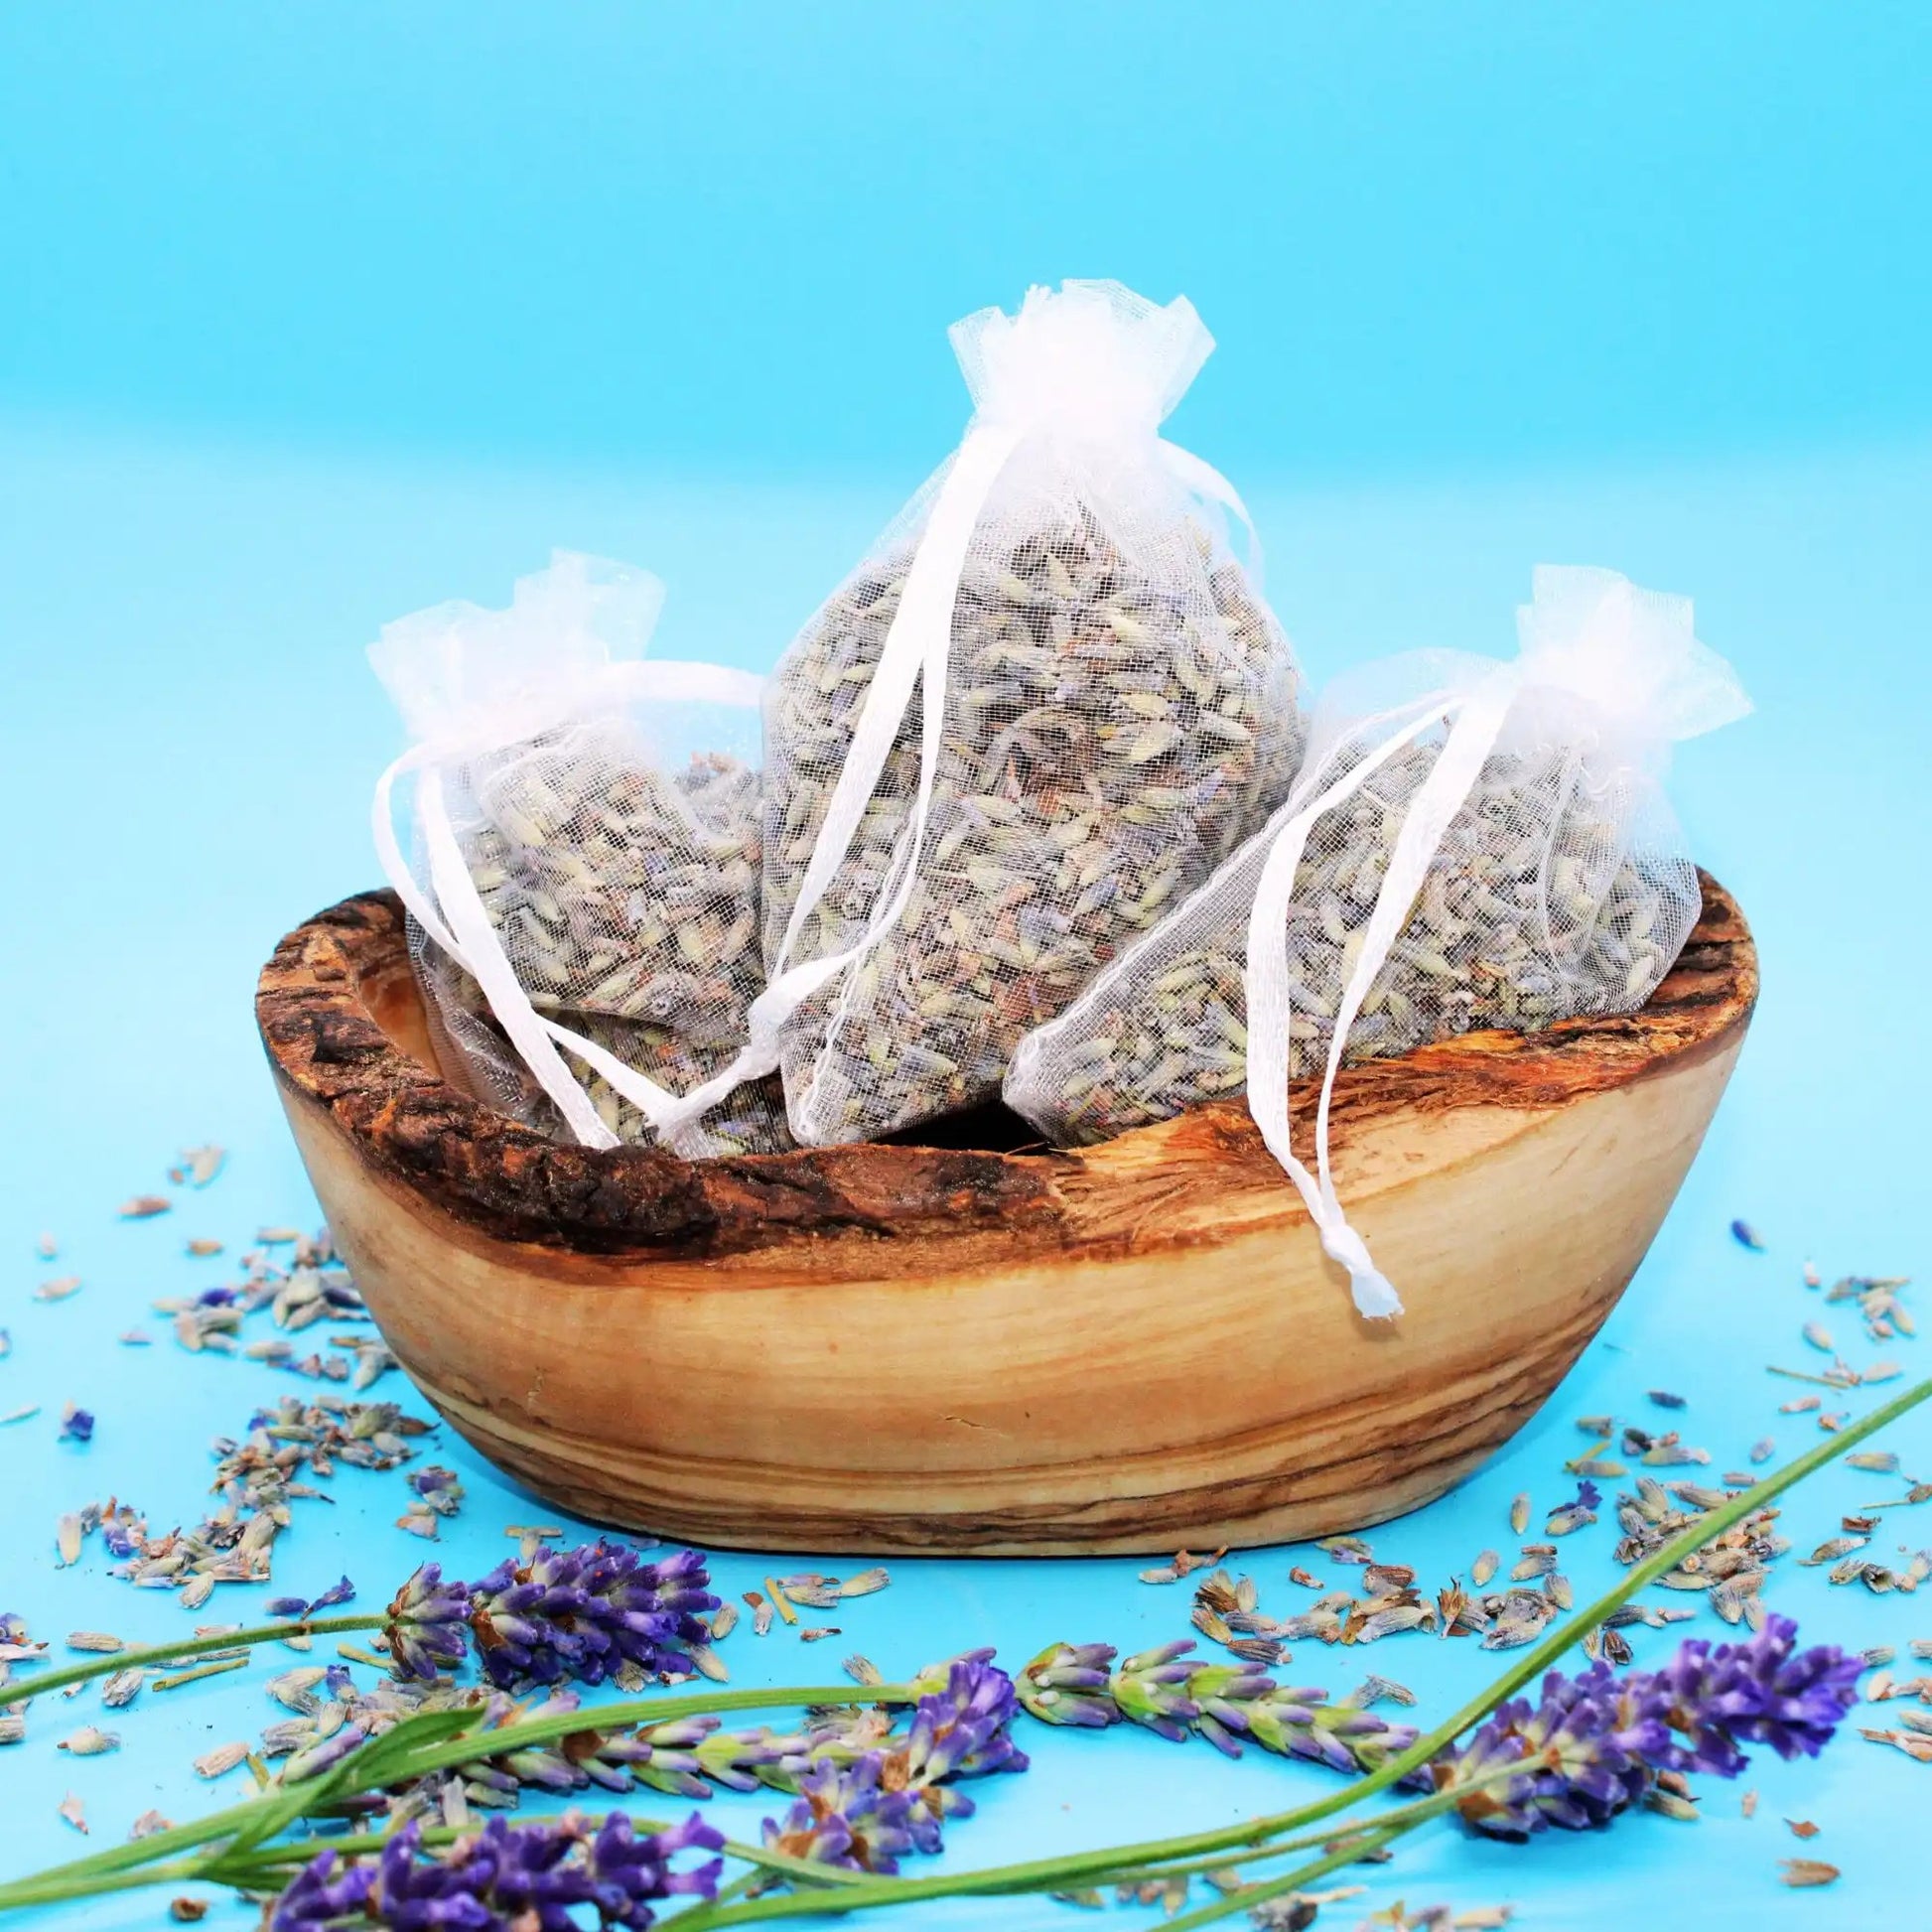 Lavendelsäckchen mit getrockneten Lavendelblüten - natürliche Regenerations- und Duftmischung